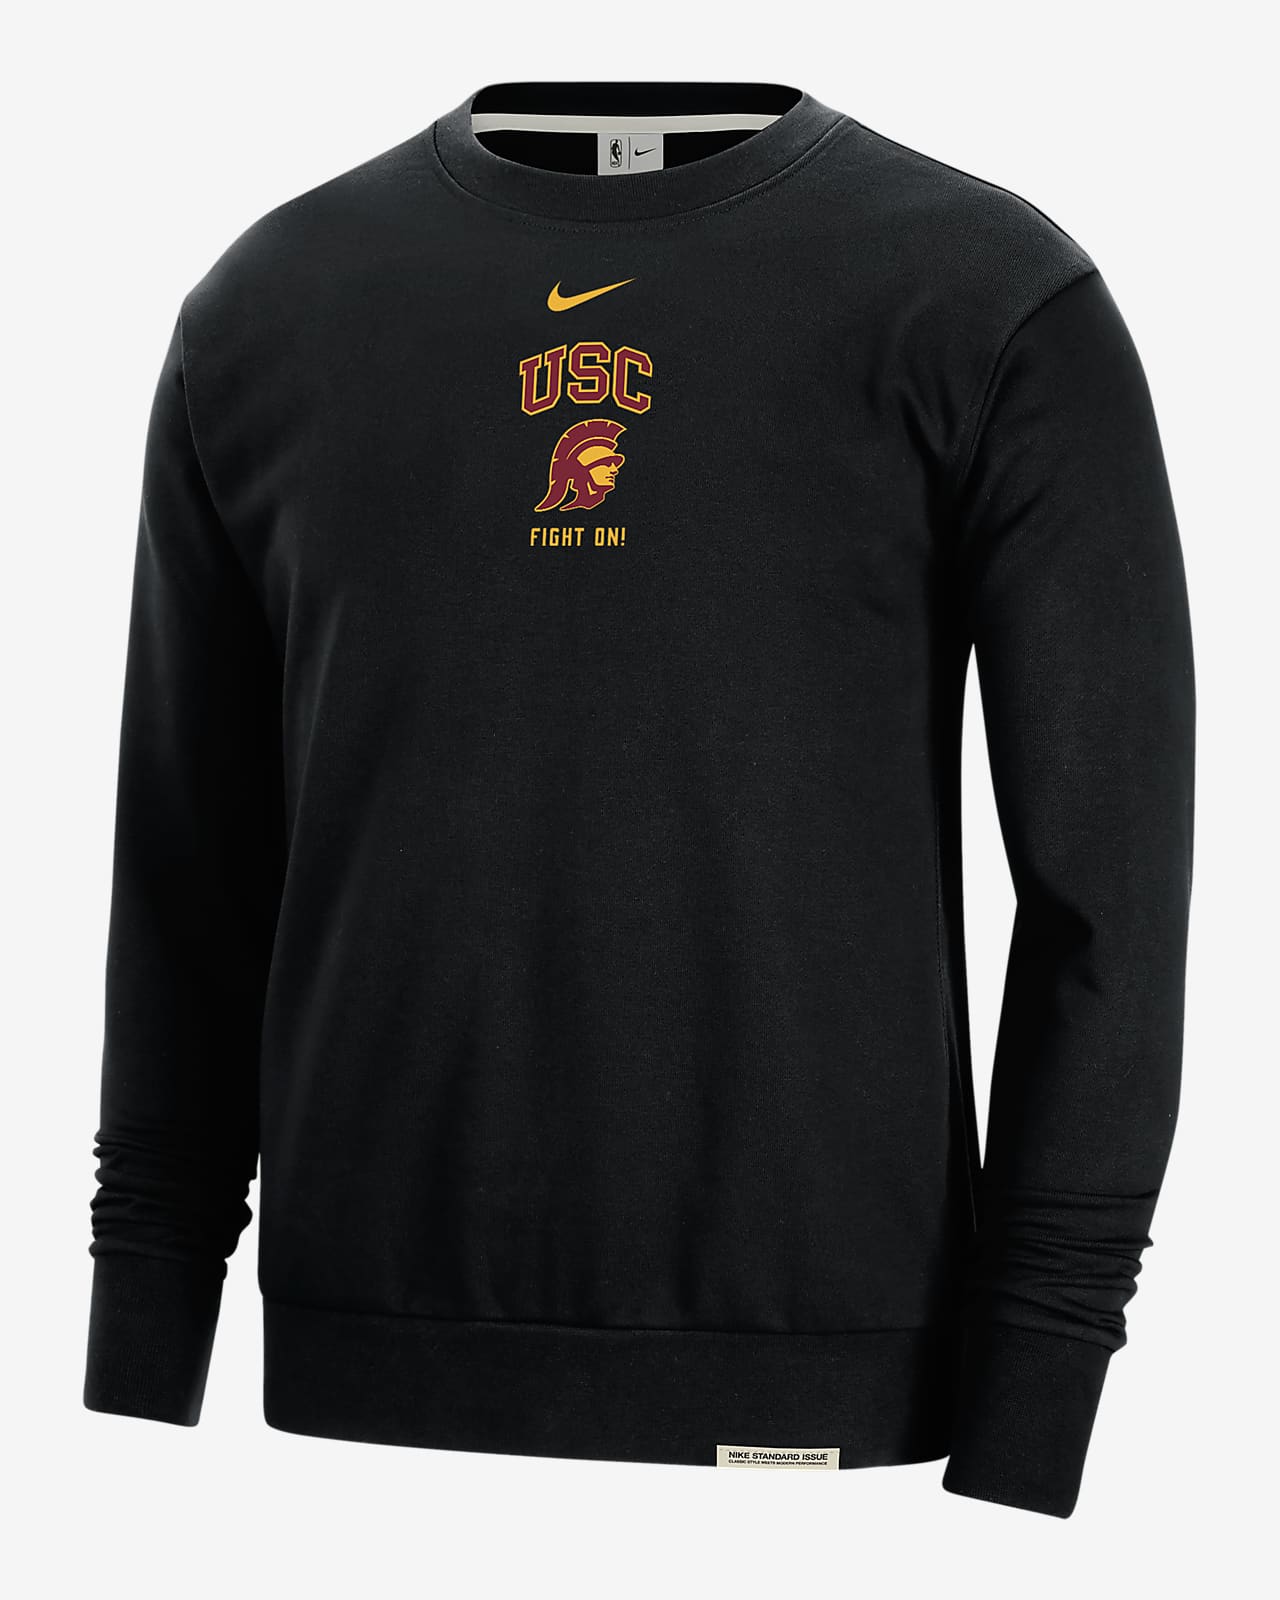 USC Standard Issue Men's Nike College Fleece Crew-Neck Sweatshirt